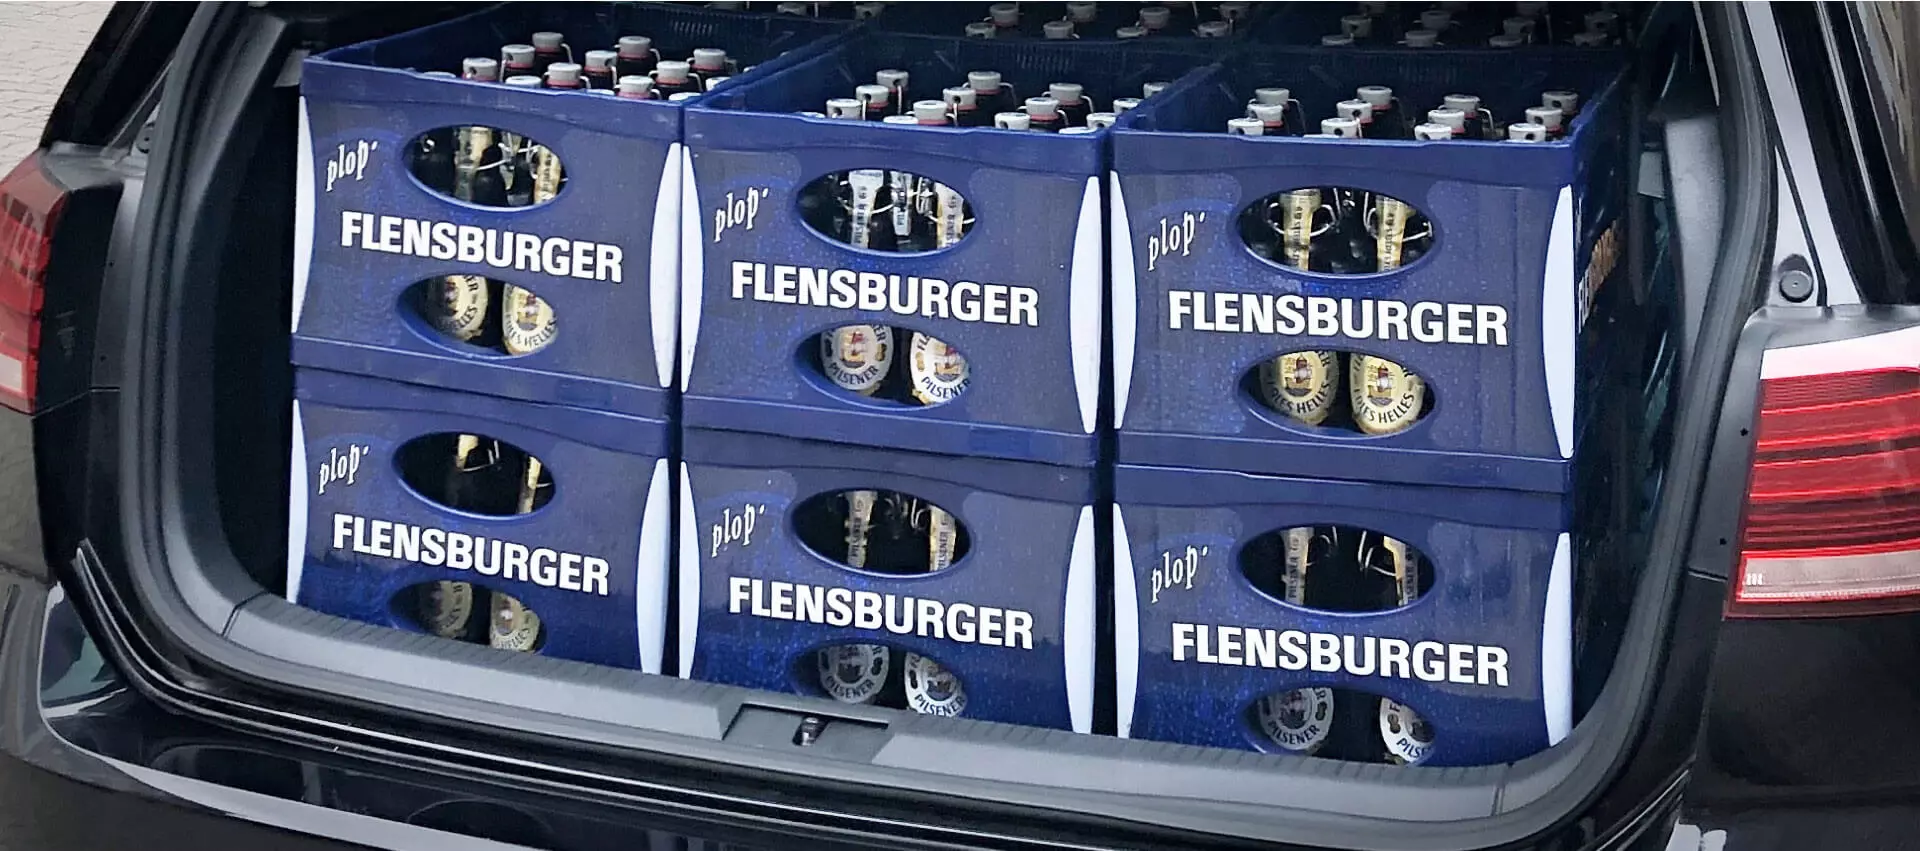 Offener Kofferraum mit 6 Kisten Flensburger Getränken beladen.